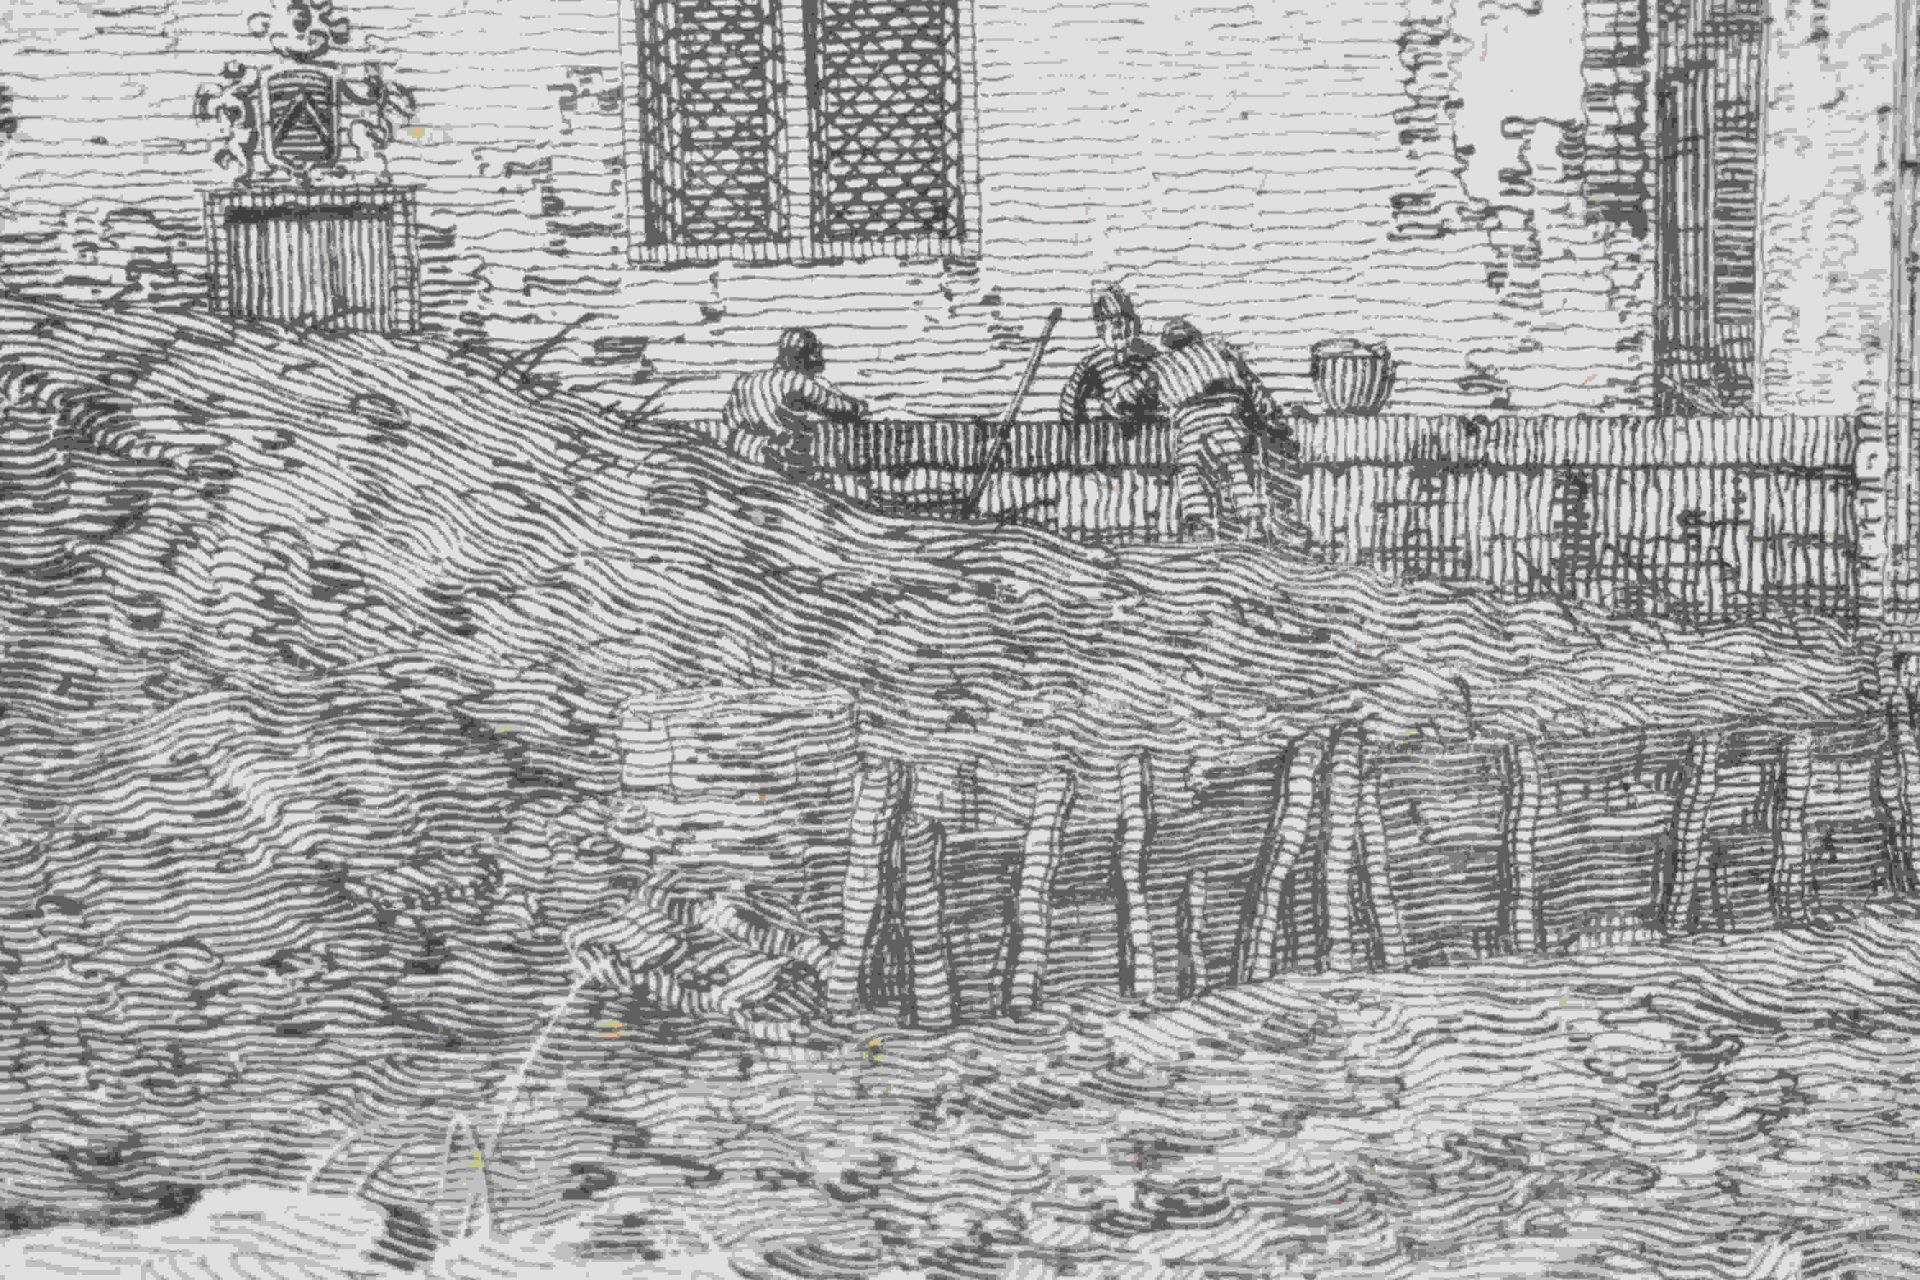 Canal, Giovanni Antonio, gen. Canaletto: Il portico con la lanterna - Image 24 of 24